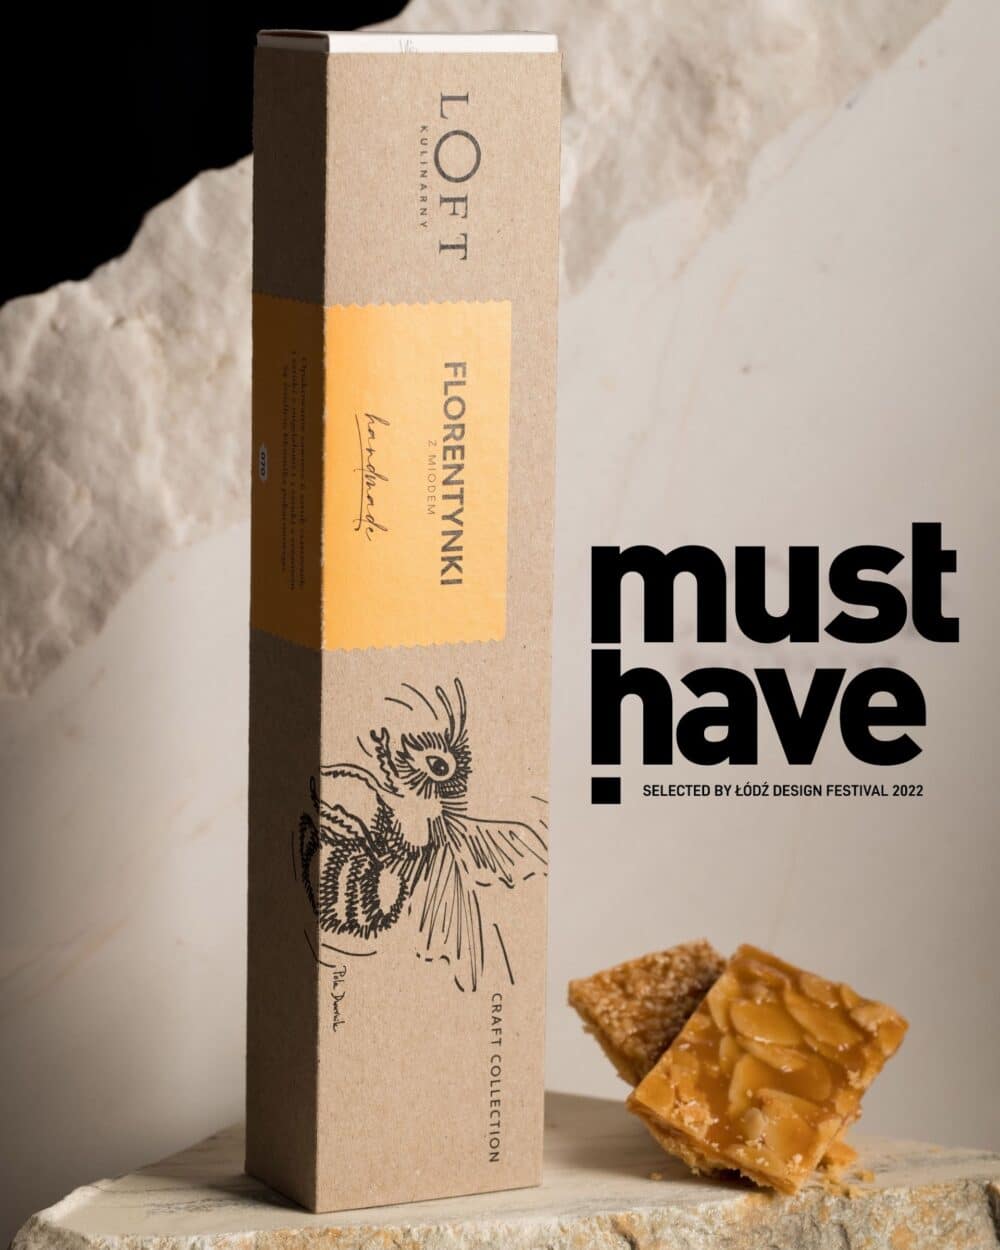 Smakowe i wizualne uniesienia zdobywają must have: jak ciasteczka z grafiką Poli Dwurnik pomagają pszczołom